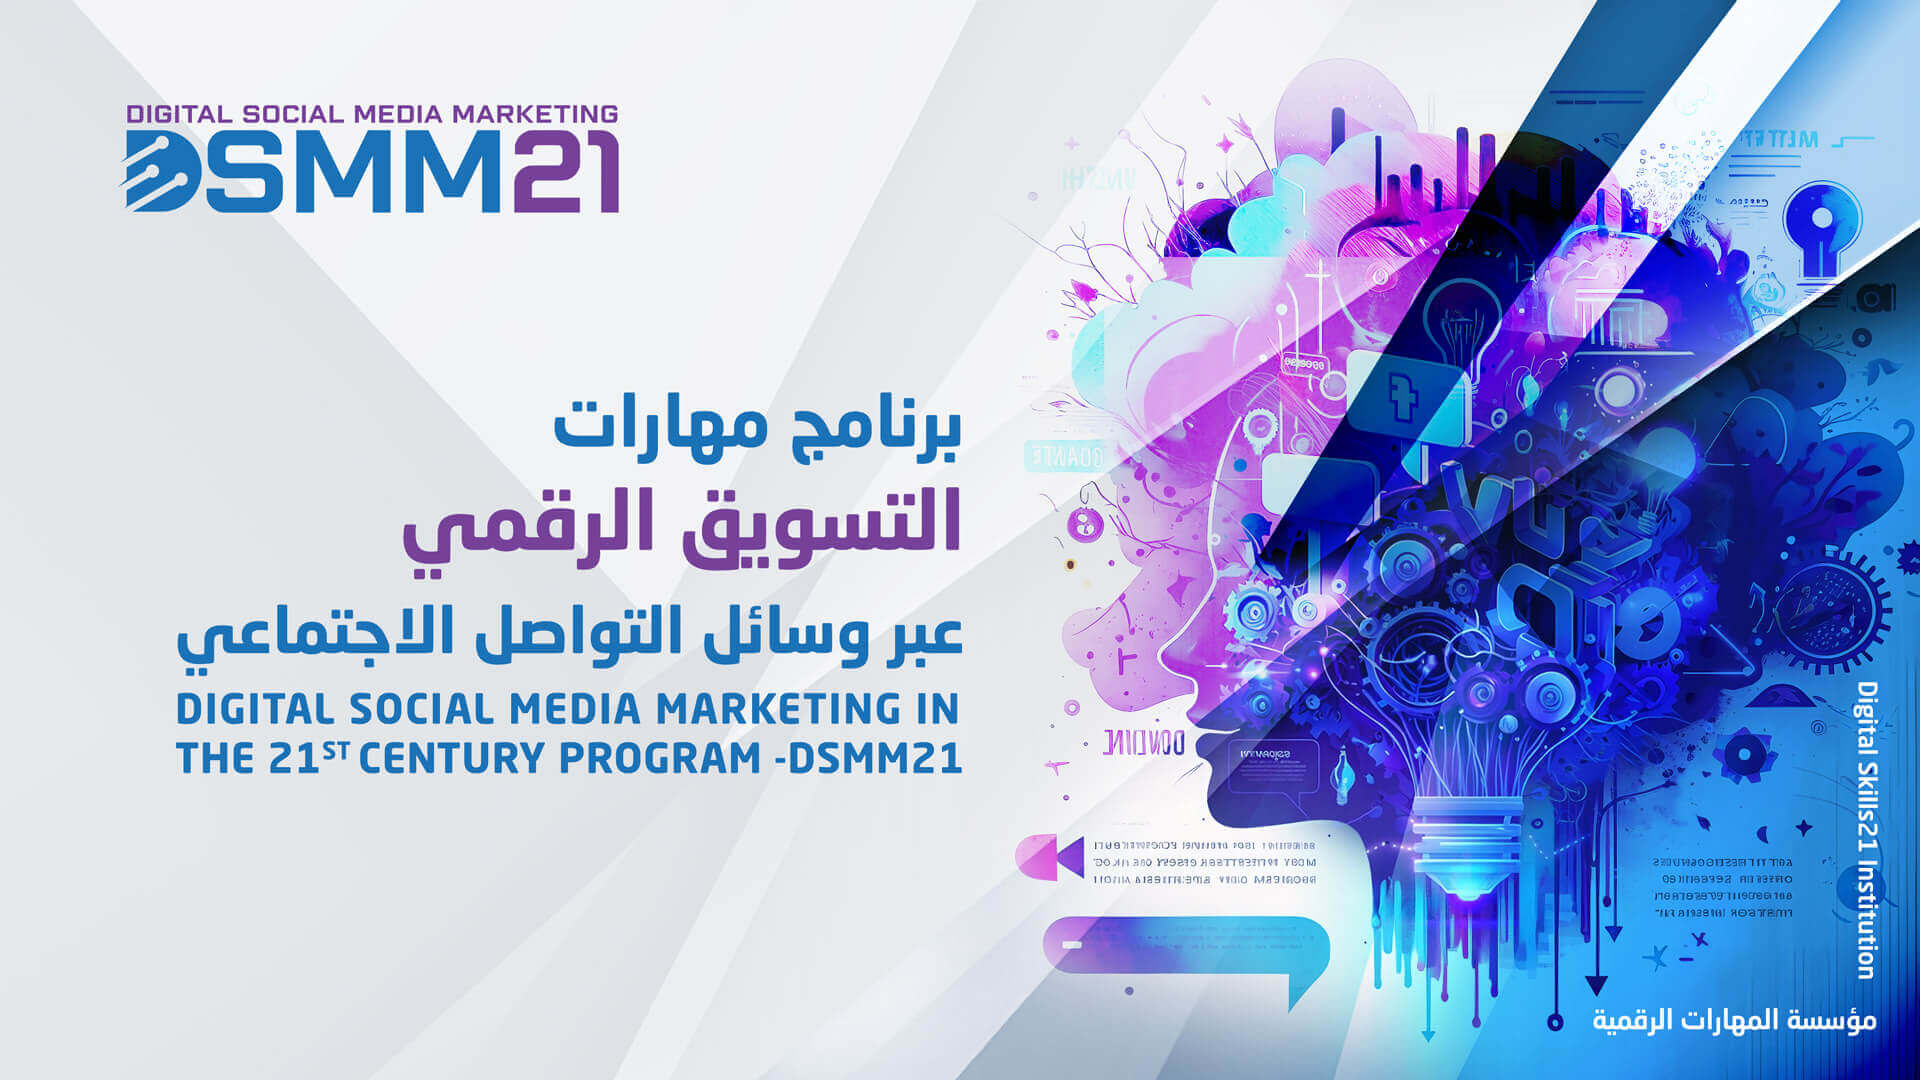 الشهادة الدولية لمهارات التسويق الرقمي عبر وسائل التواصل الاجتماعي في القرن21- DSMM21